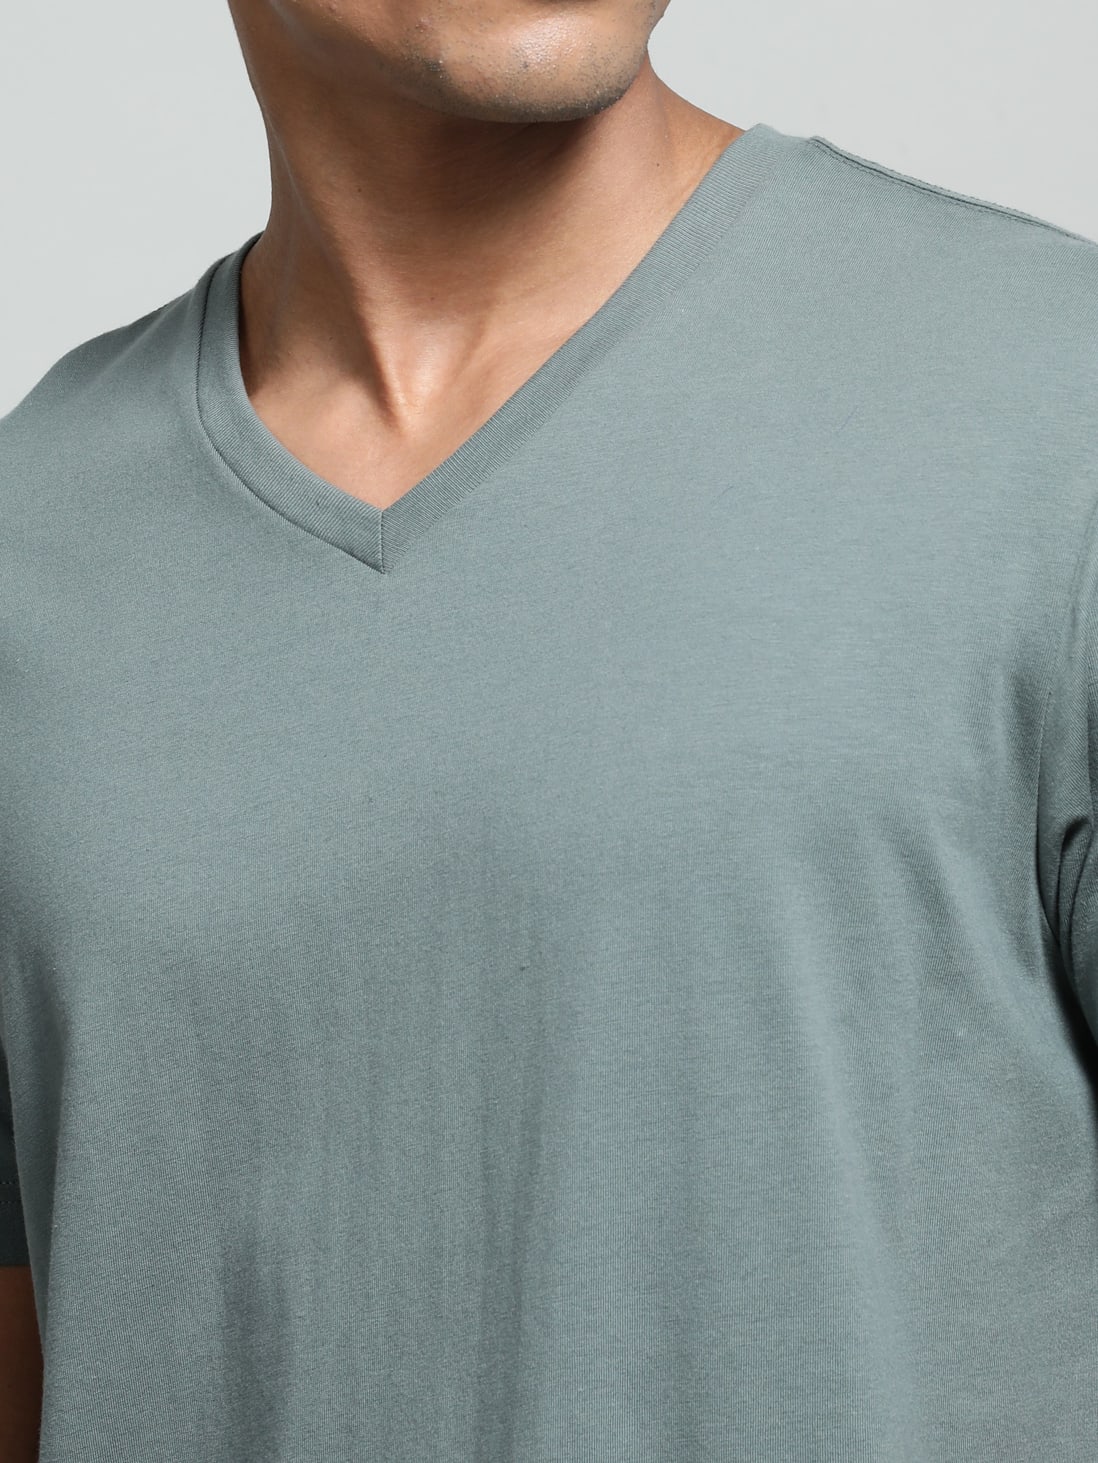 Buy Mens Super Combed Cotton Rich Solid V Neck Half Sleeve T Shirt Balsam Green 2726 Jockey